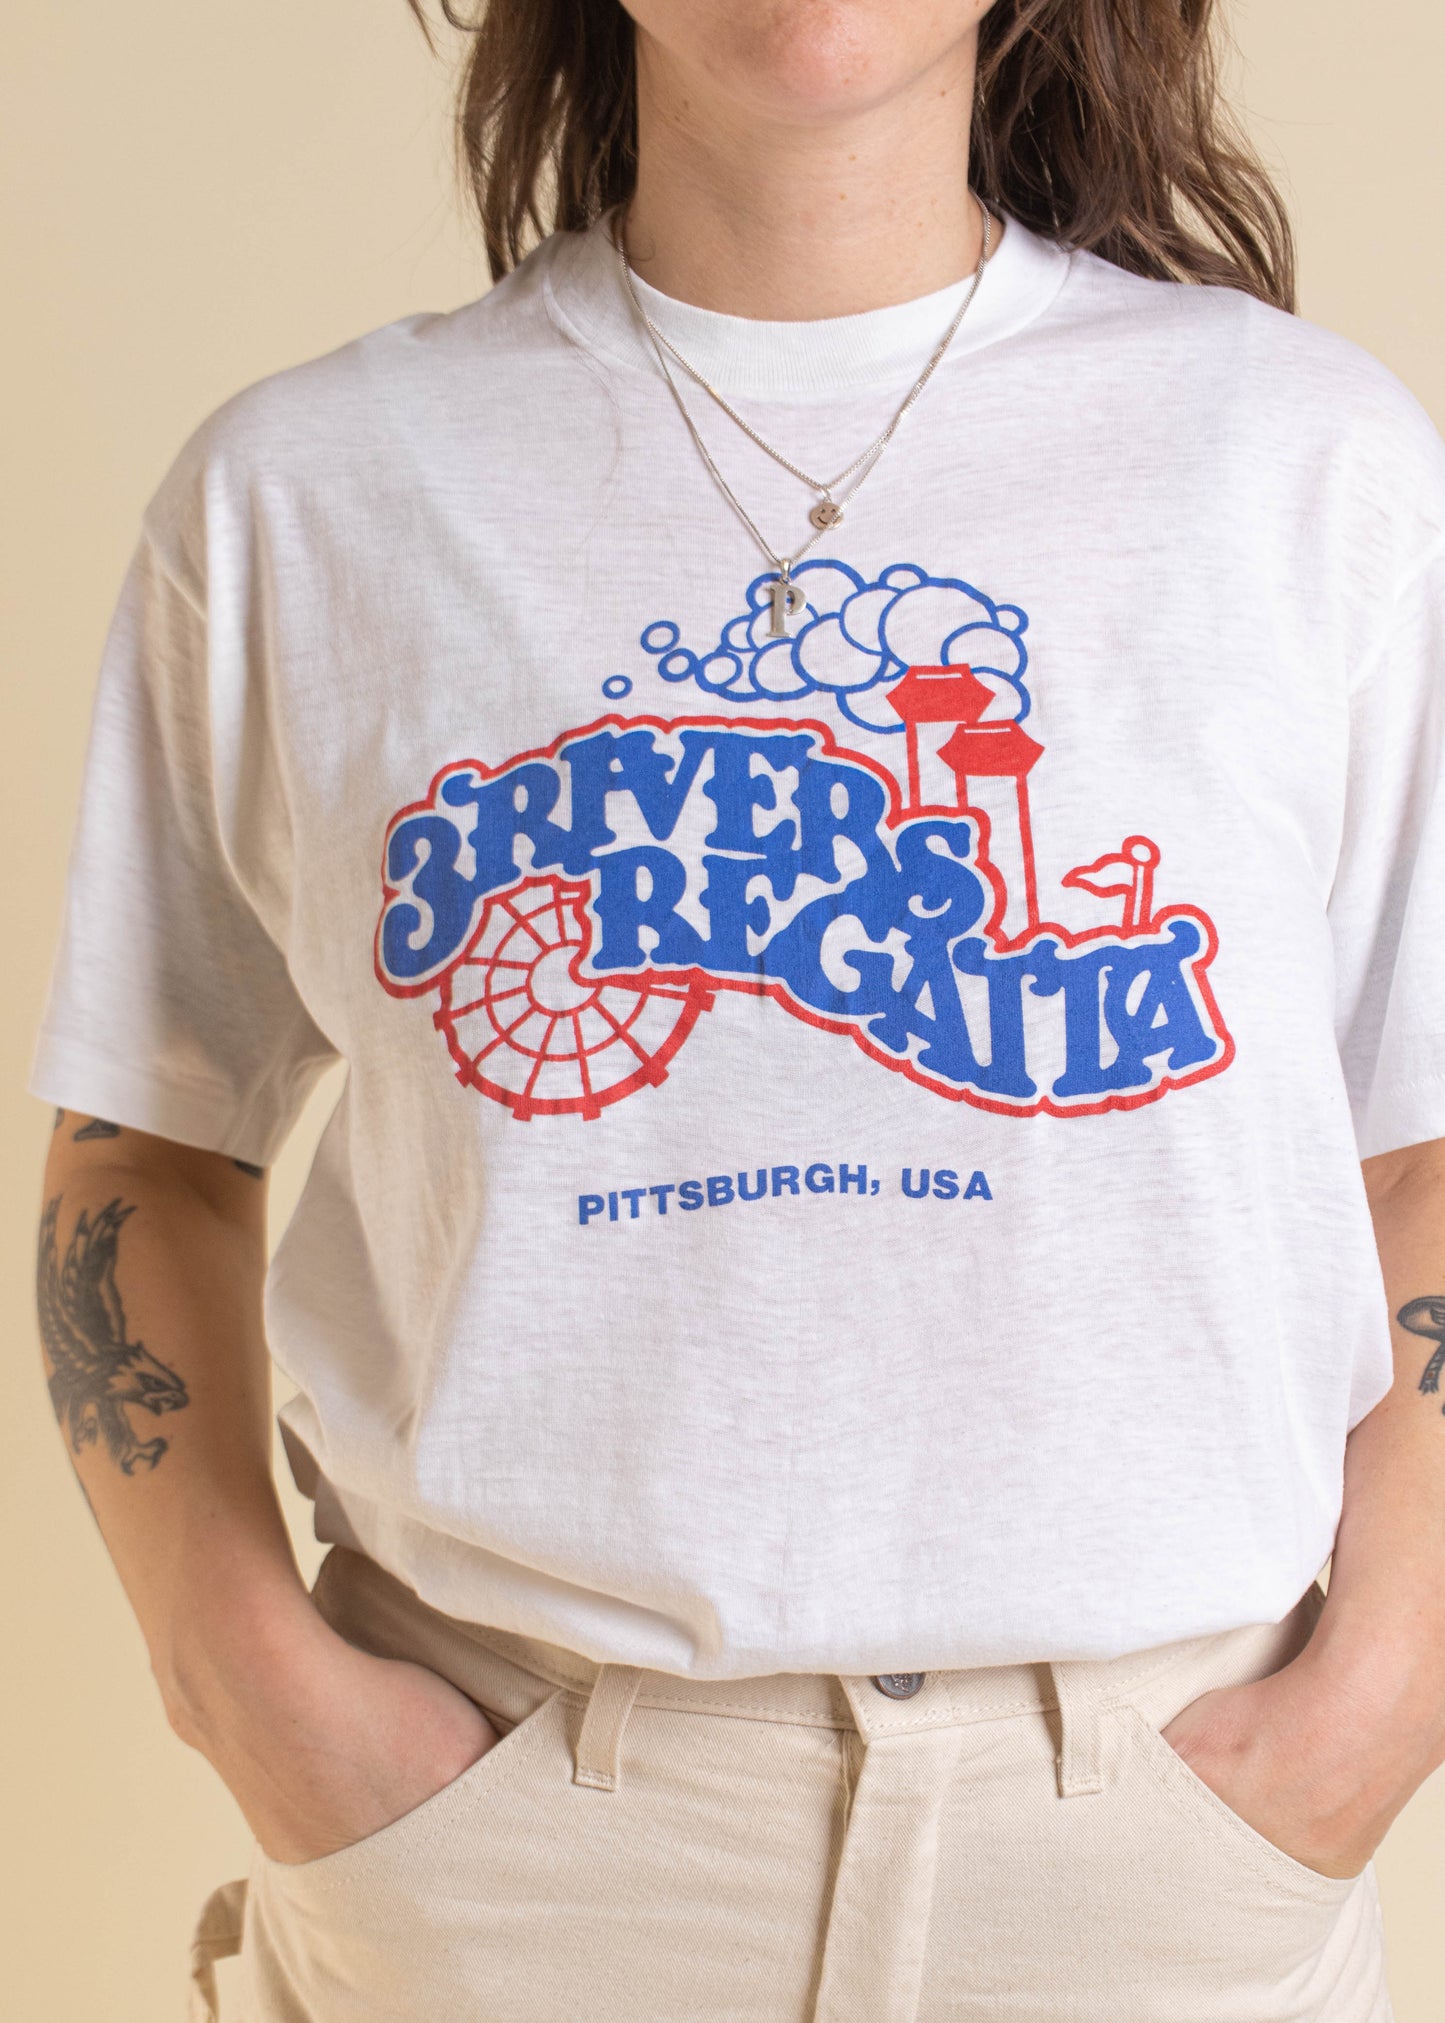 1980s 3 Rivers Regatta Pittsburgh Souvenir T-Shirt Size M/L